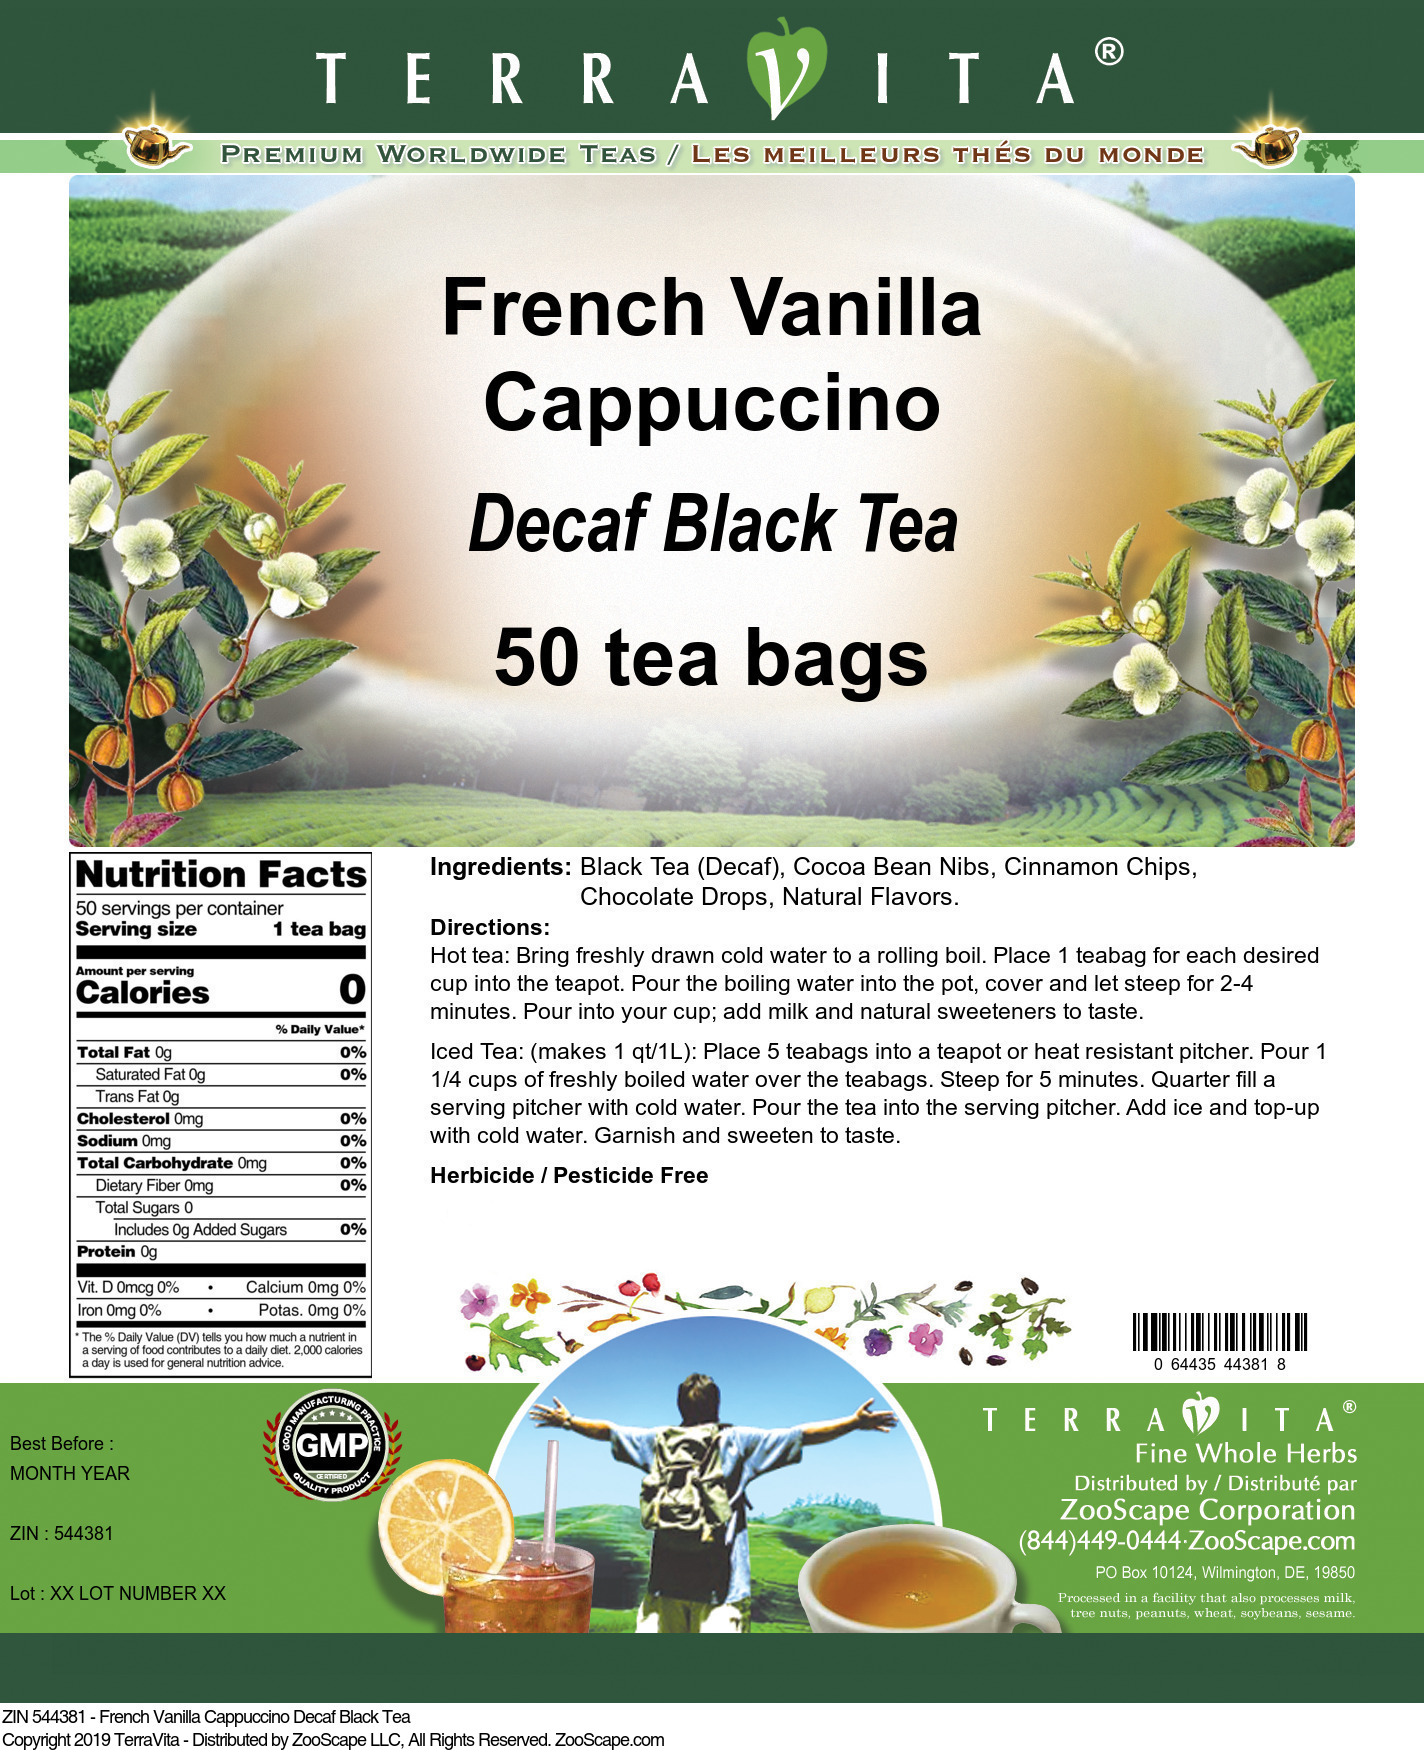 French Vanilla Cappuccino Decaf Black Tea - Label